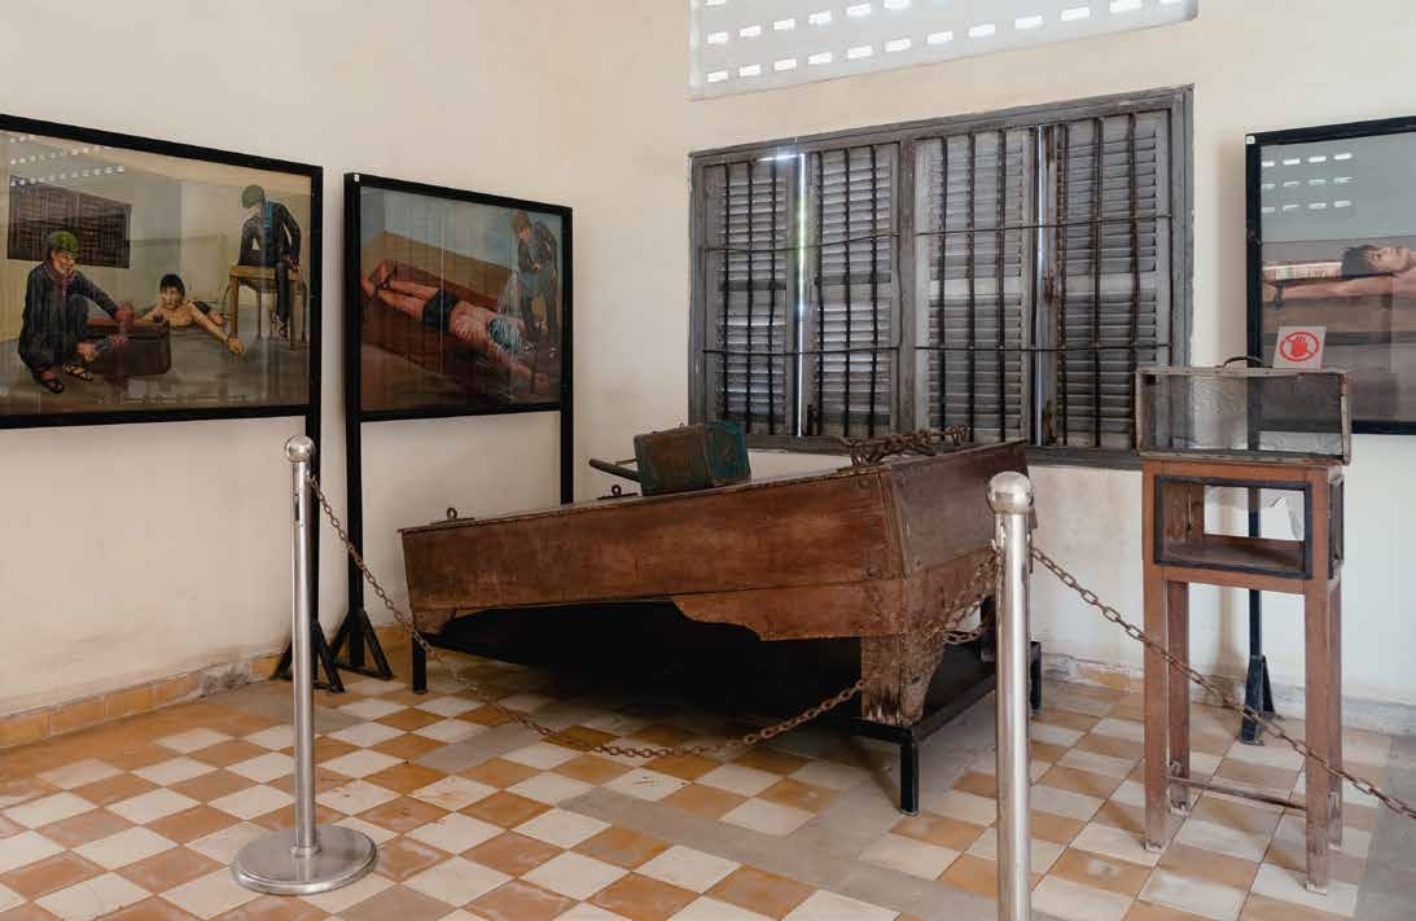 Innenansicht des Tuol Sleng Museum: Bilder von Foltermethoden und Folterinstrumente.